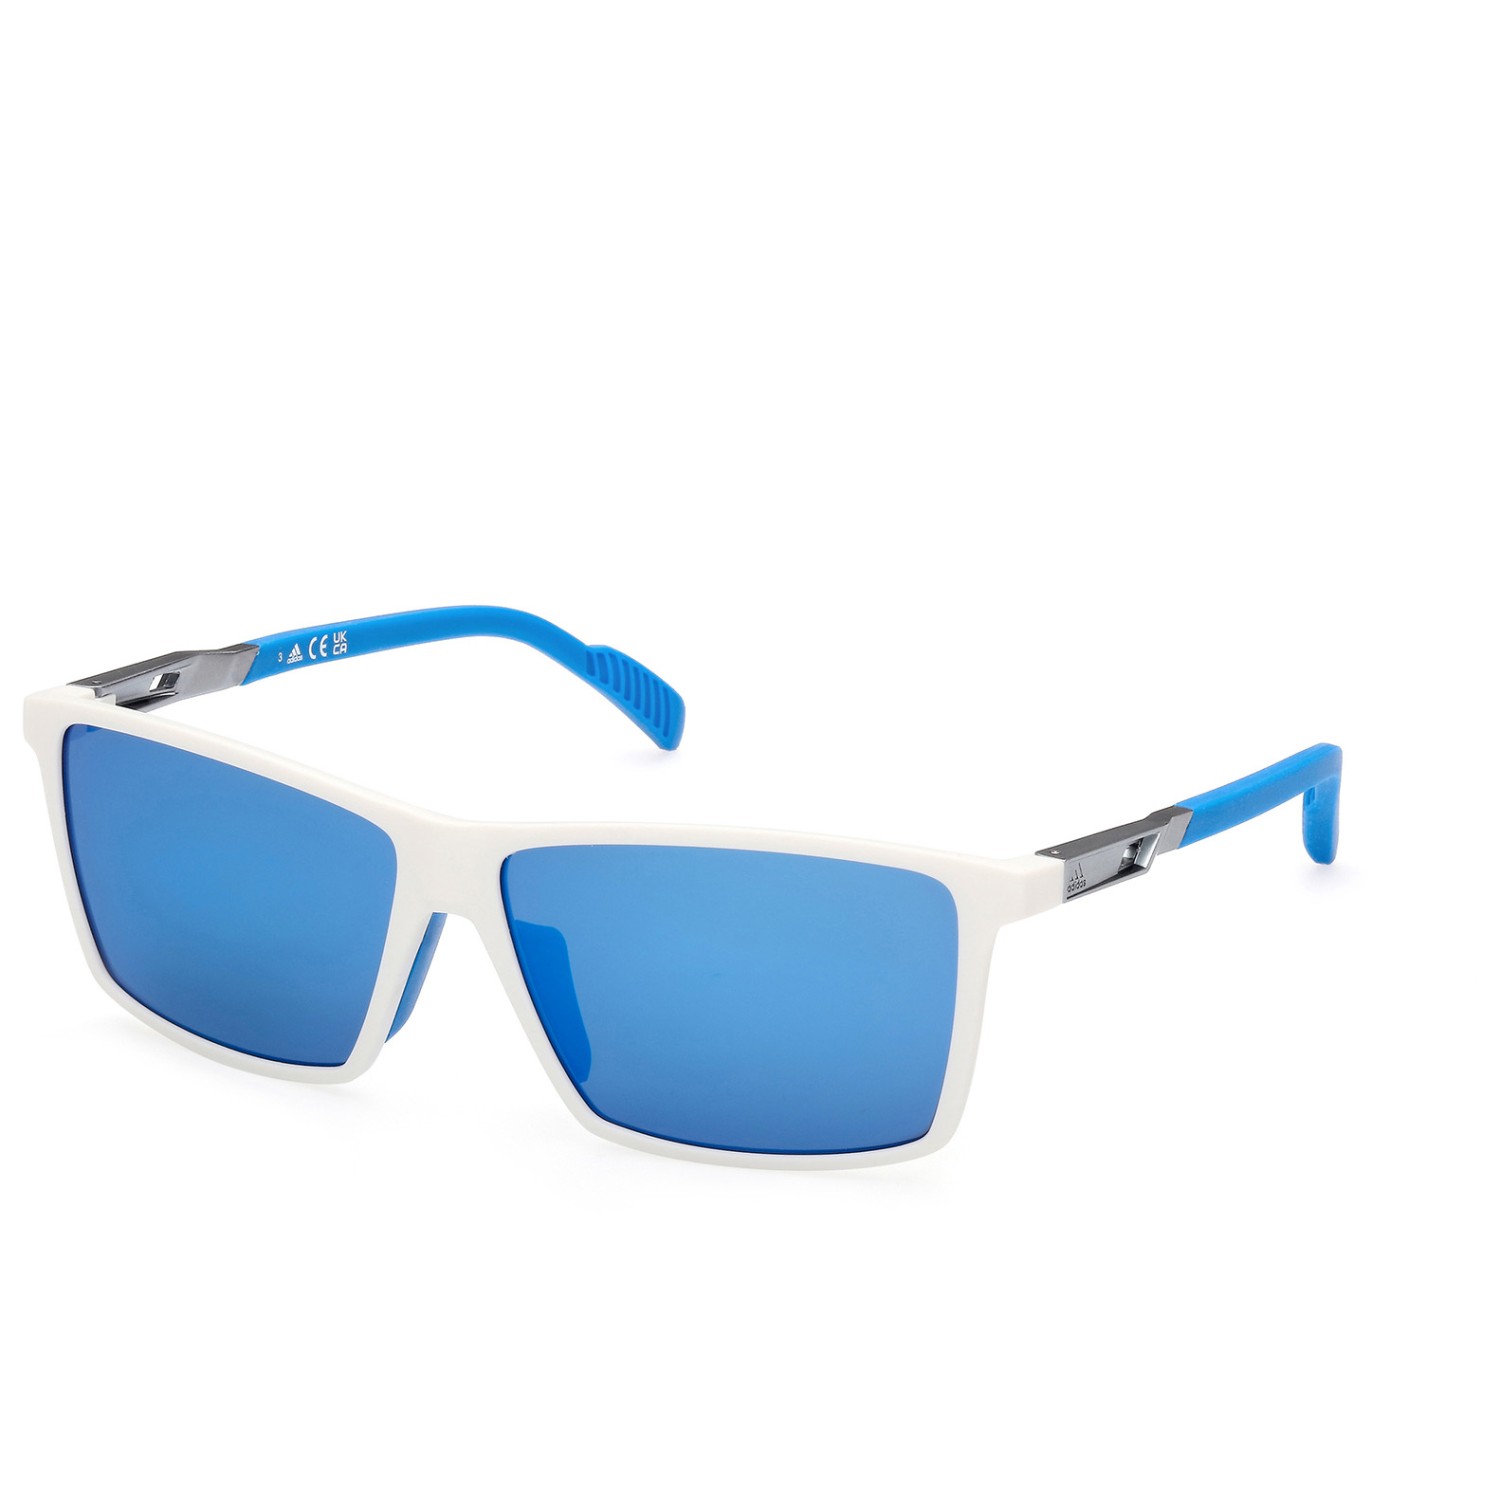 Солнцезащитные очки Adidas SP0058 Mirror Cat 3, белый солнцезащитные очки adidas sp0083 mirror cat 3 цвет crystal